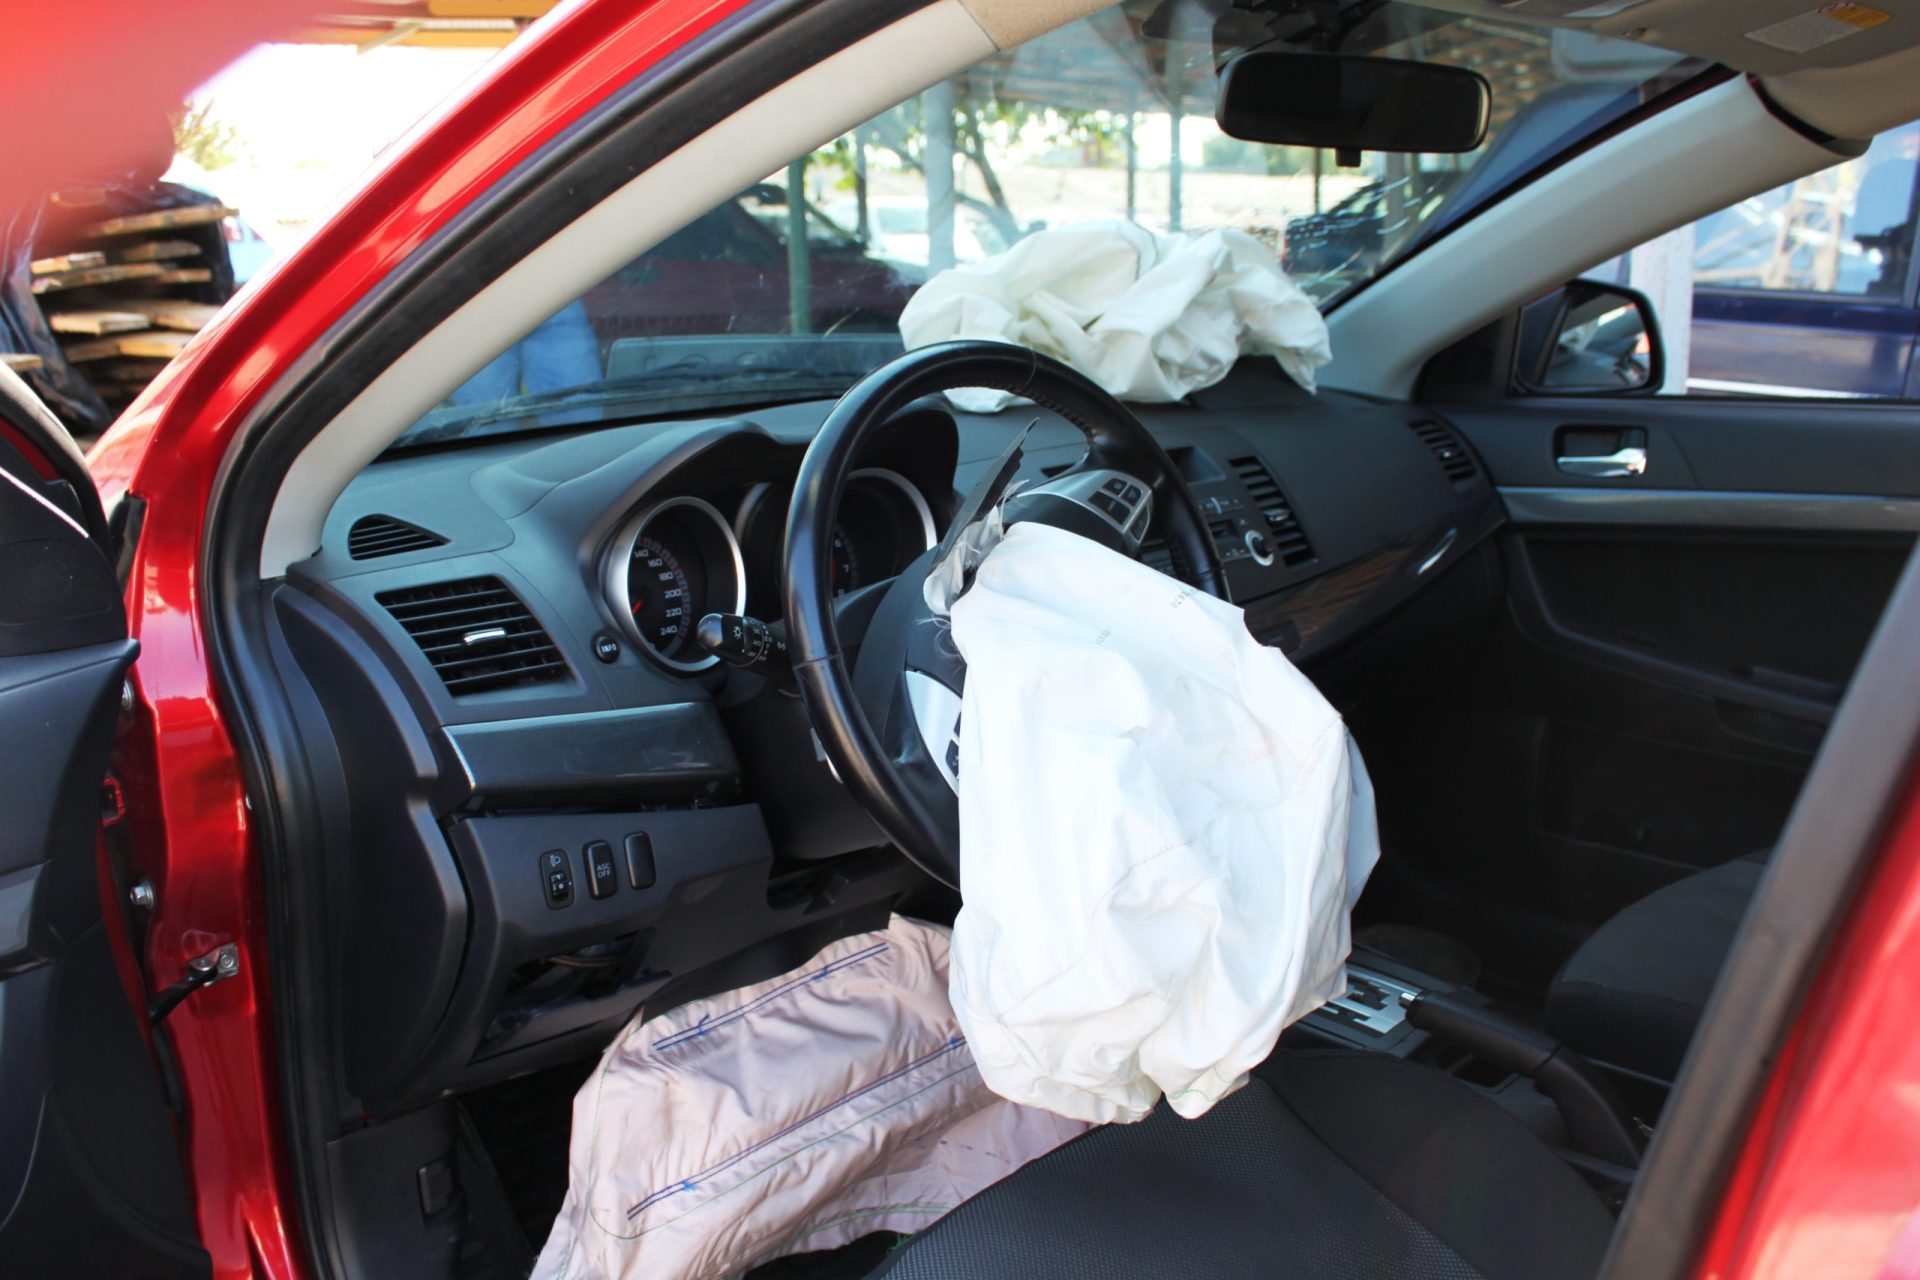 Honda vasculha sucatas para recolher airbags com defeito